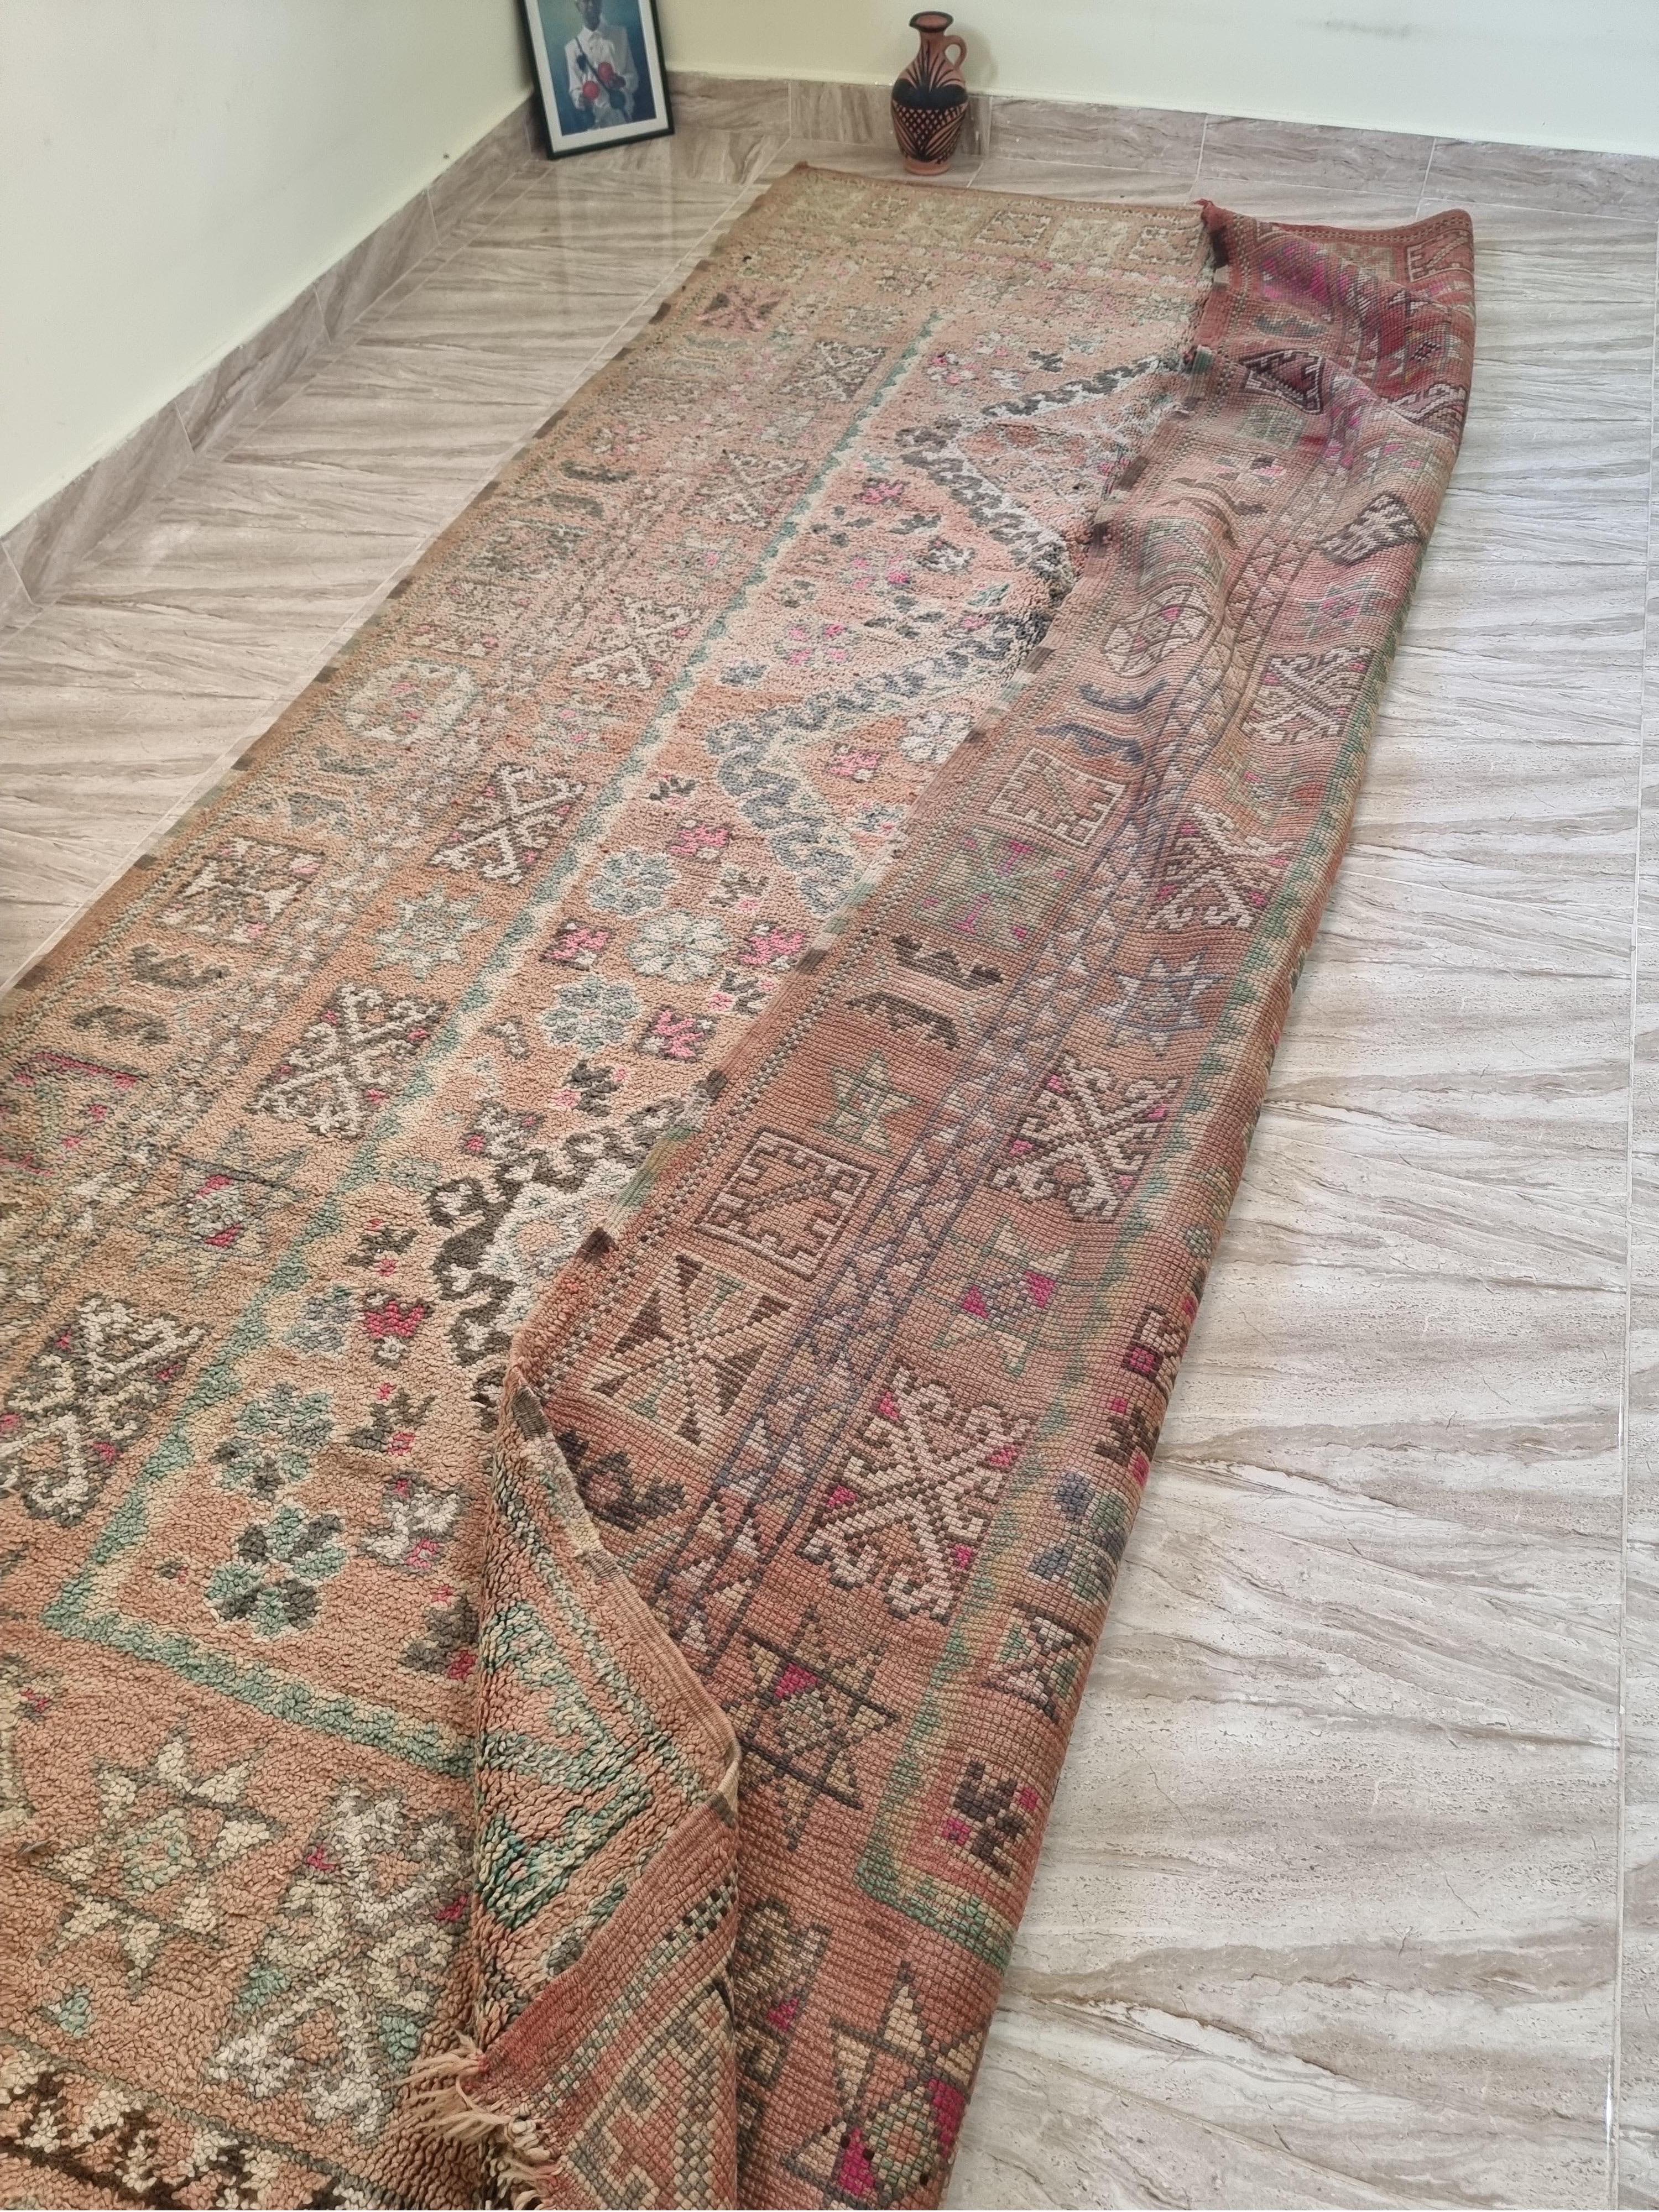 Seltener marokkanischer Vintage-Teppich.
Jeder Teppich hat seine eigene Identität. Ein einzigartiger Teppich mit einer schönen Hintergrundgeschichte steht für ein Leben voller historischer und bedeutungsvoller Hintergründe. Jeder einzelne unserer